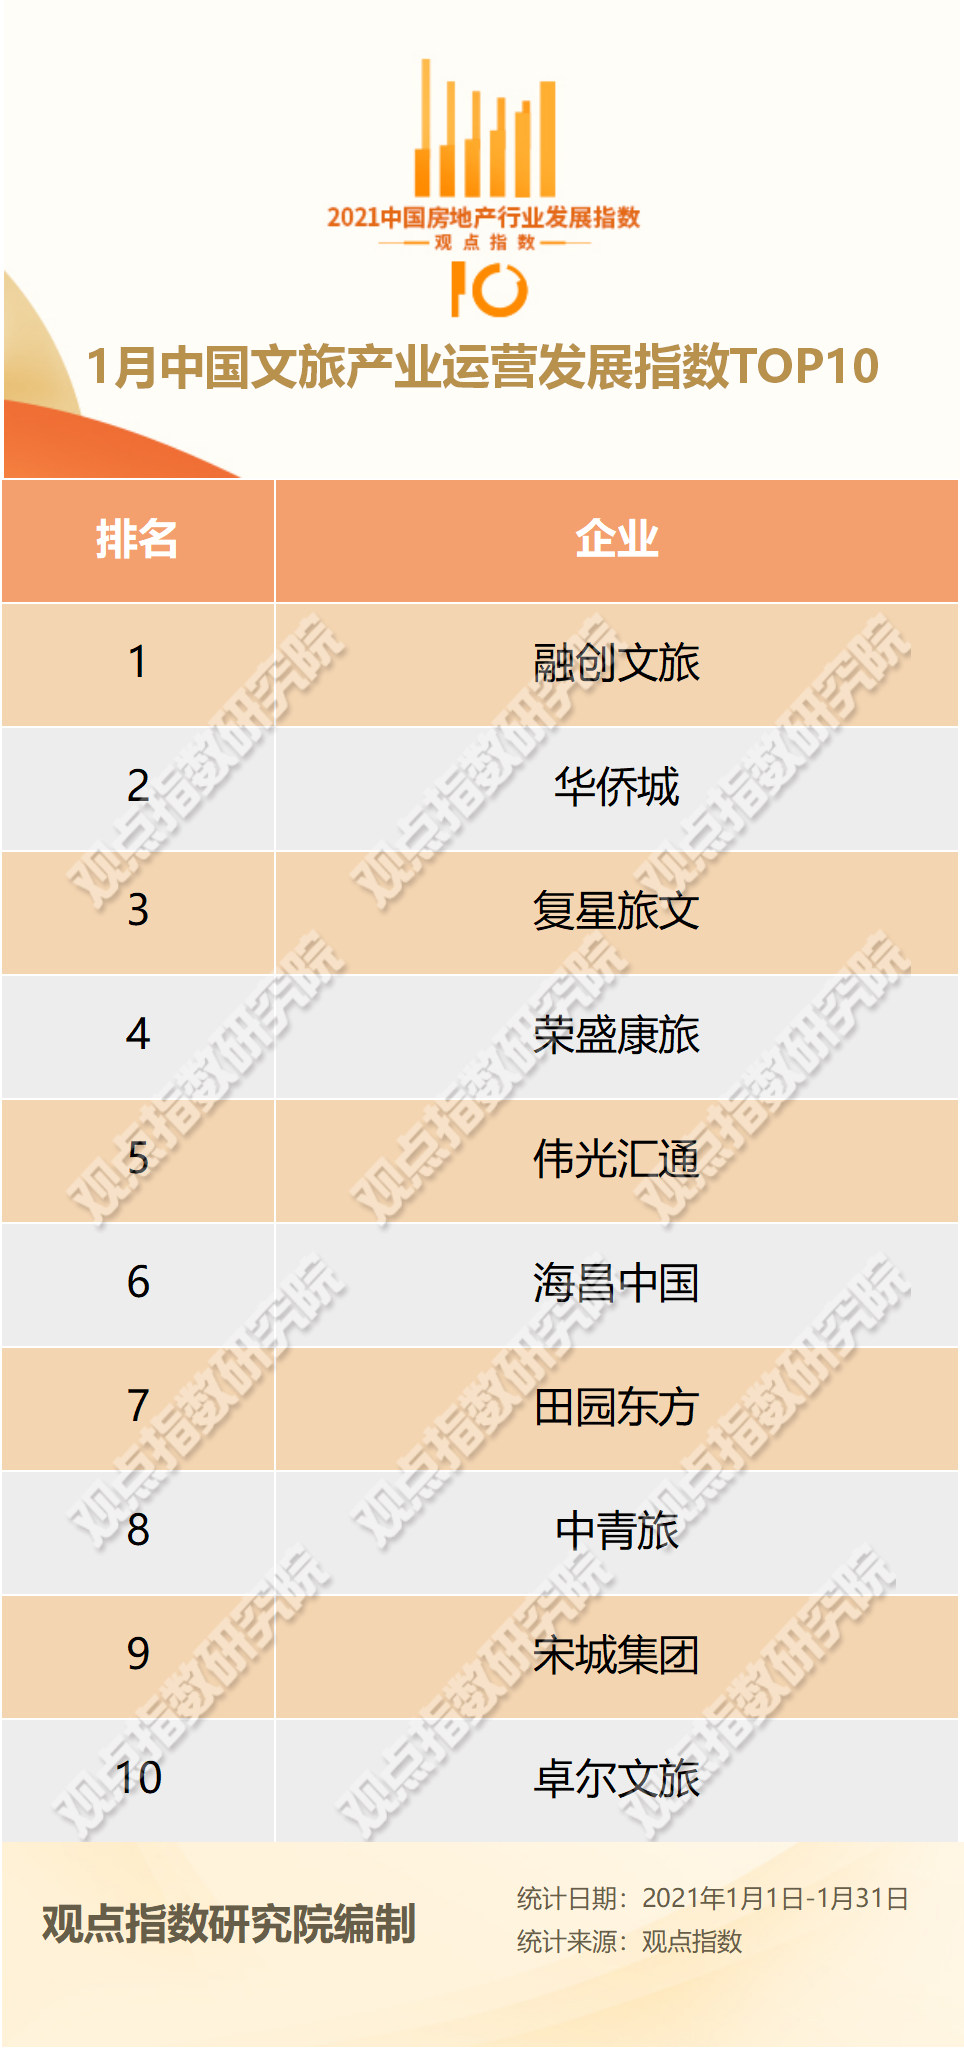 1月中国文旅产业TOP10报告·观点月度指数